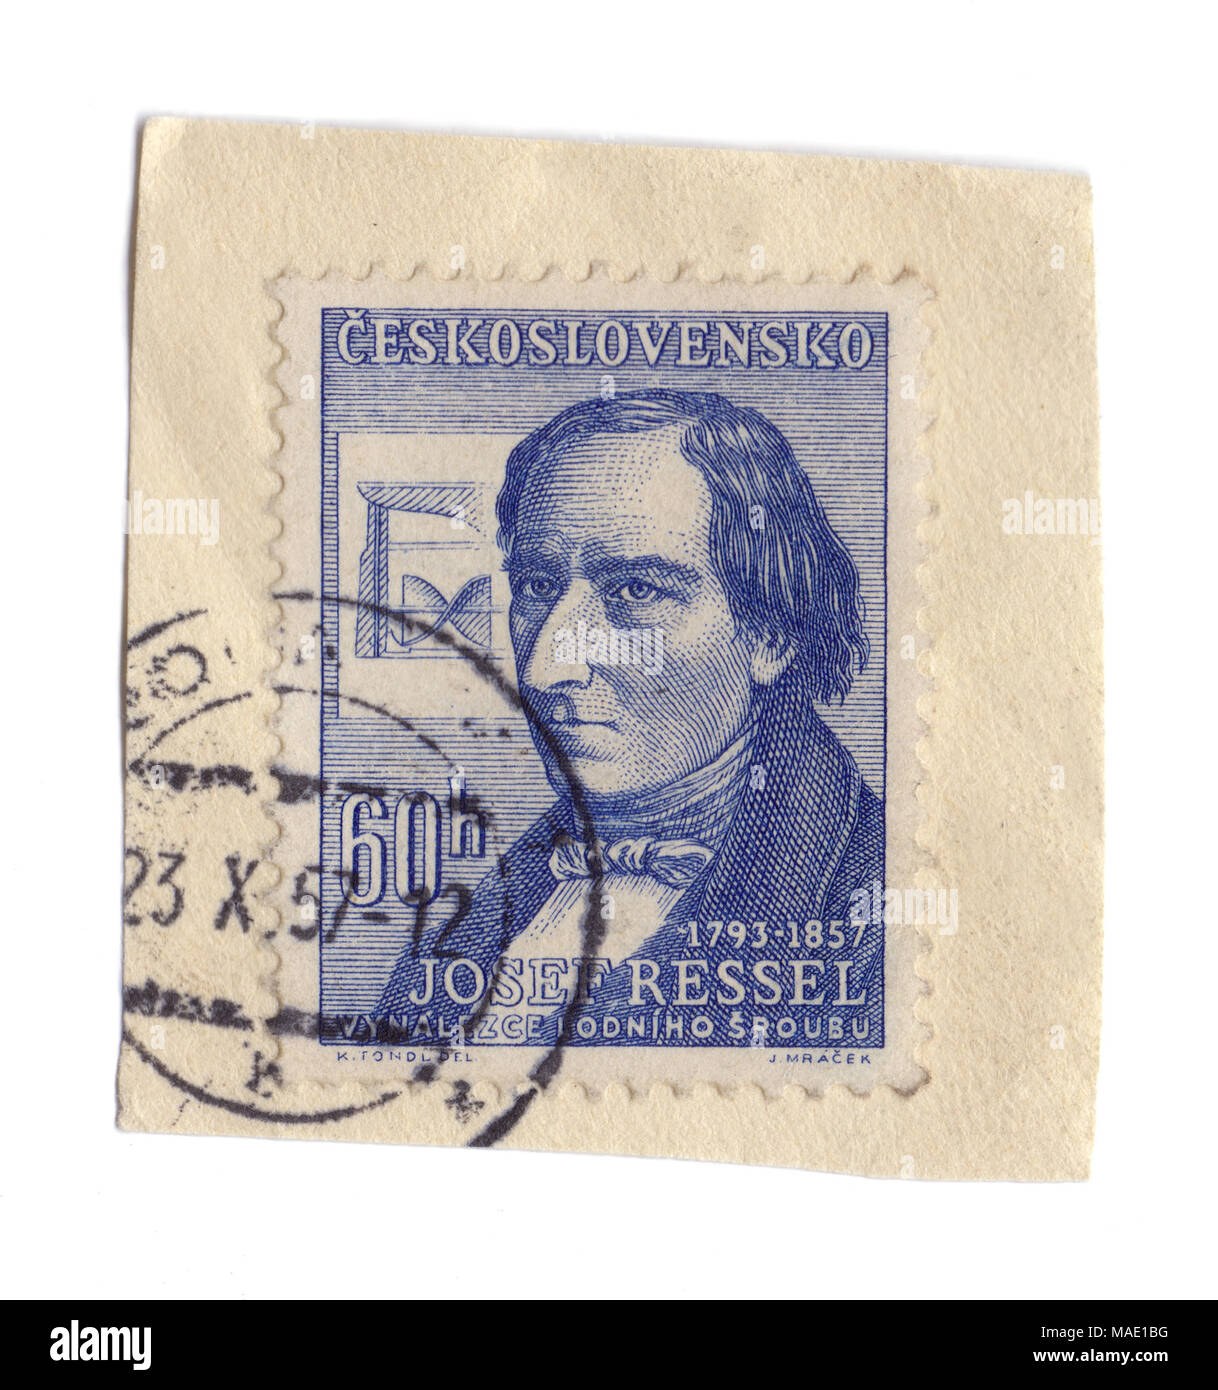 Josef Ressel, inventeur du premier navire de travail, de l'hélice sur timbre tchèque, imprimé à Prague, en 1957, la Tchécoslovaquie (maintenant en République Tchèque) Banque D'Images